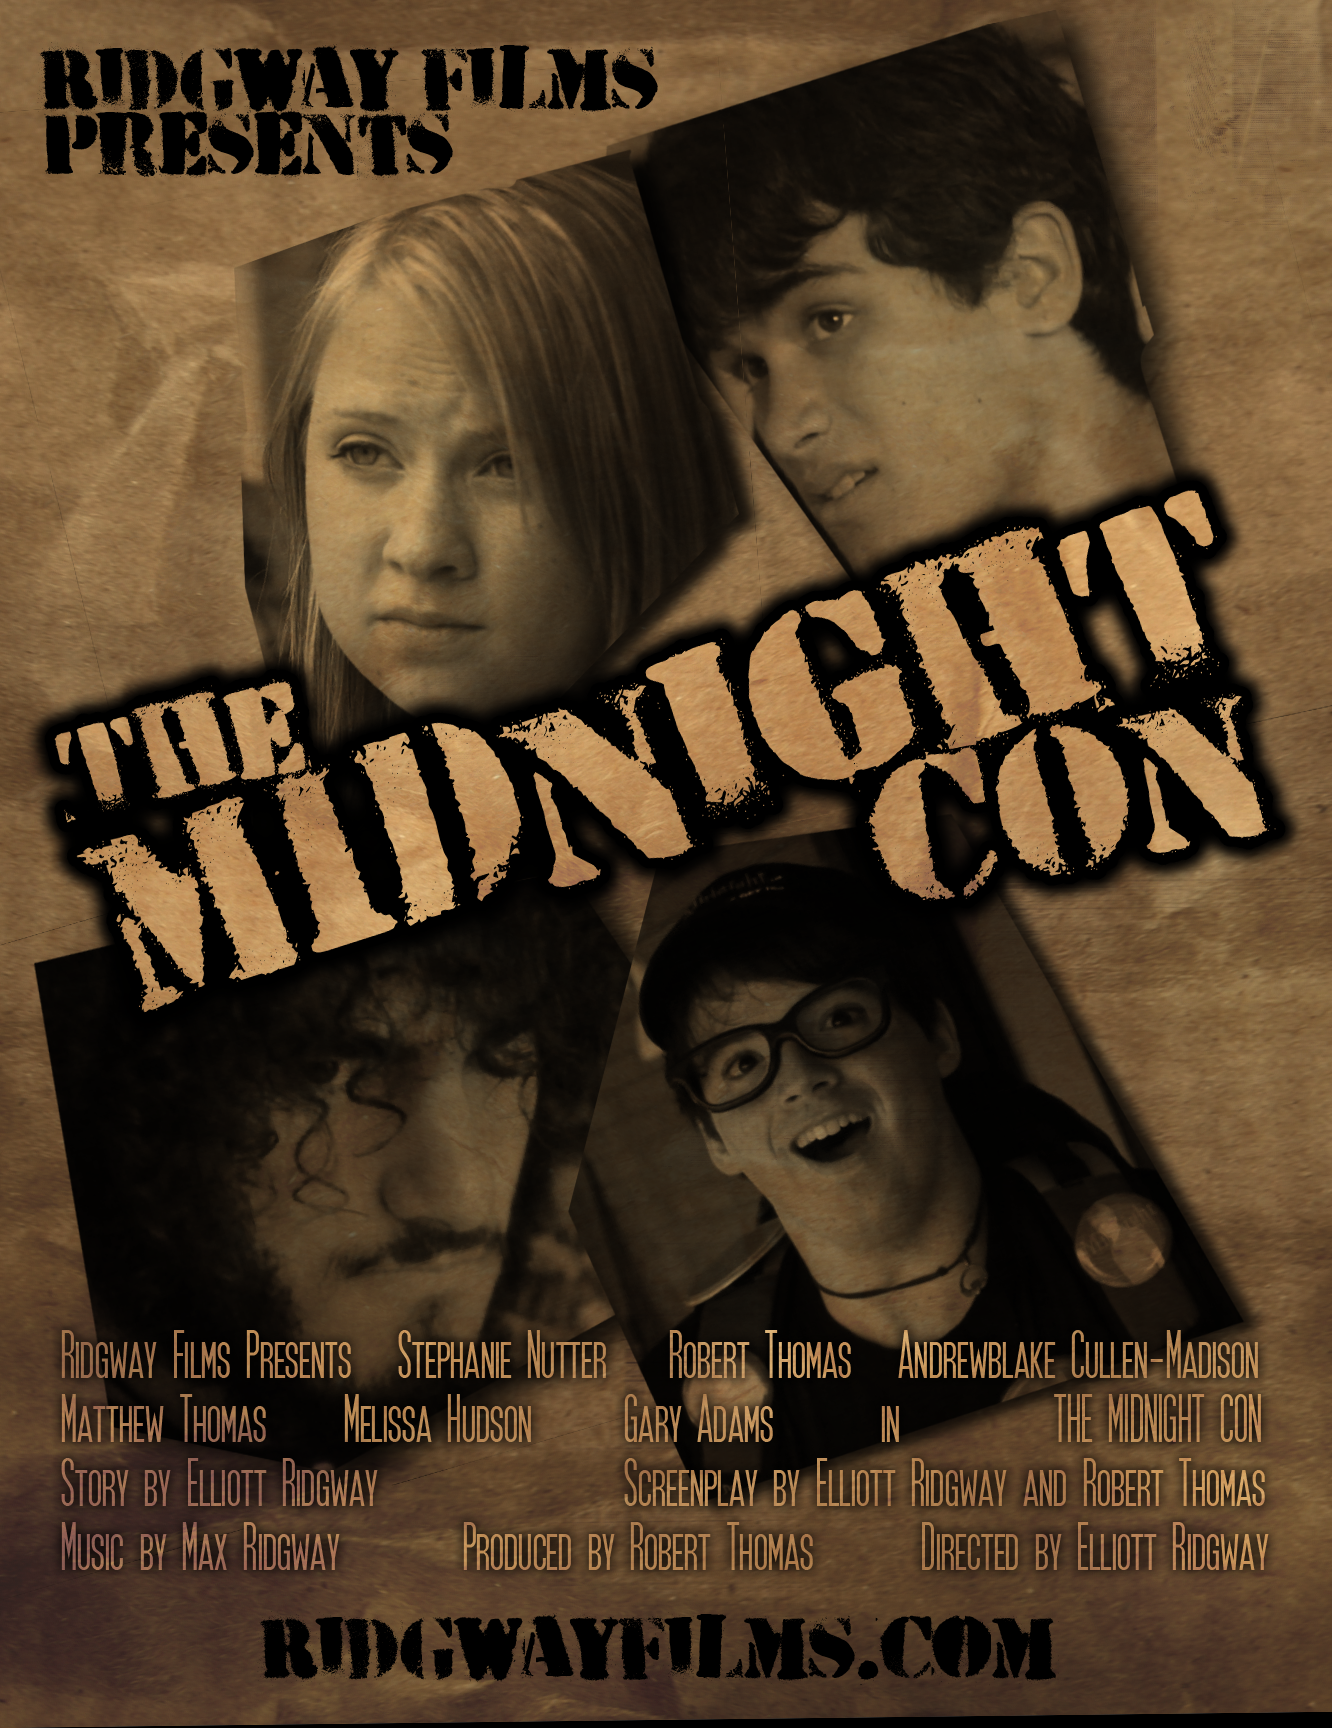 The Midnight Con